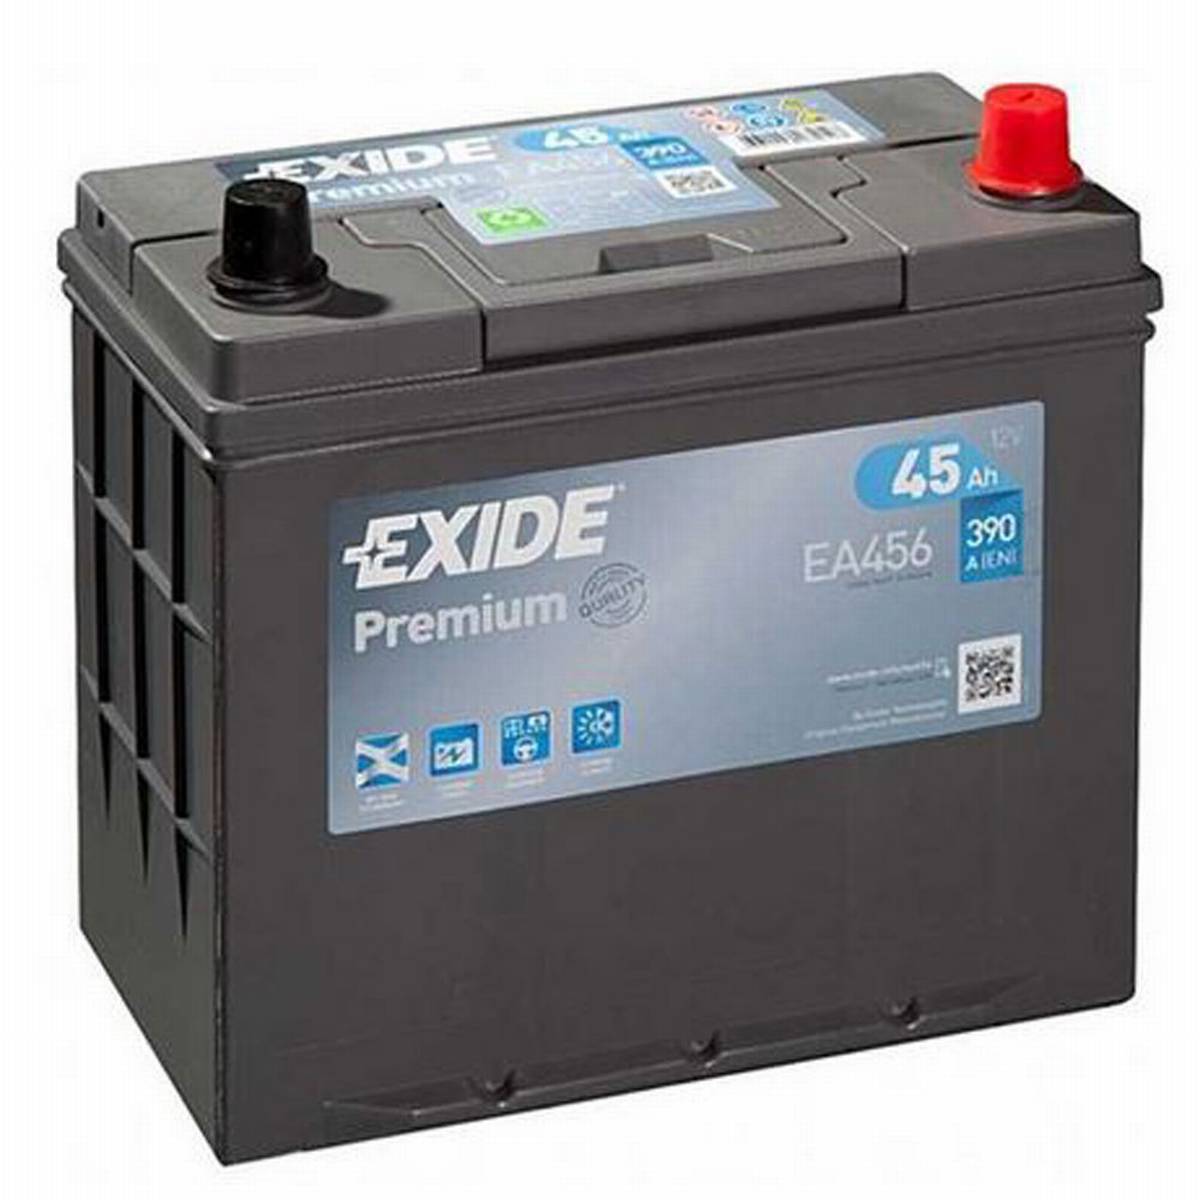 Exide EA456 Premium Carbon Boost 12V 45Ah 390A Autobatterie